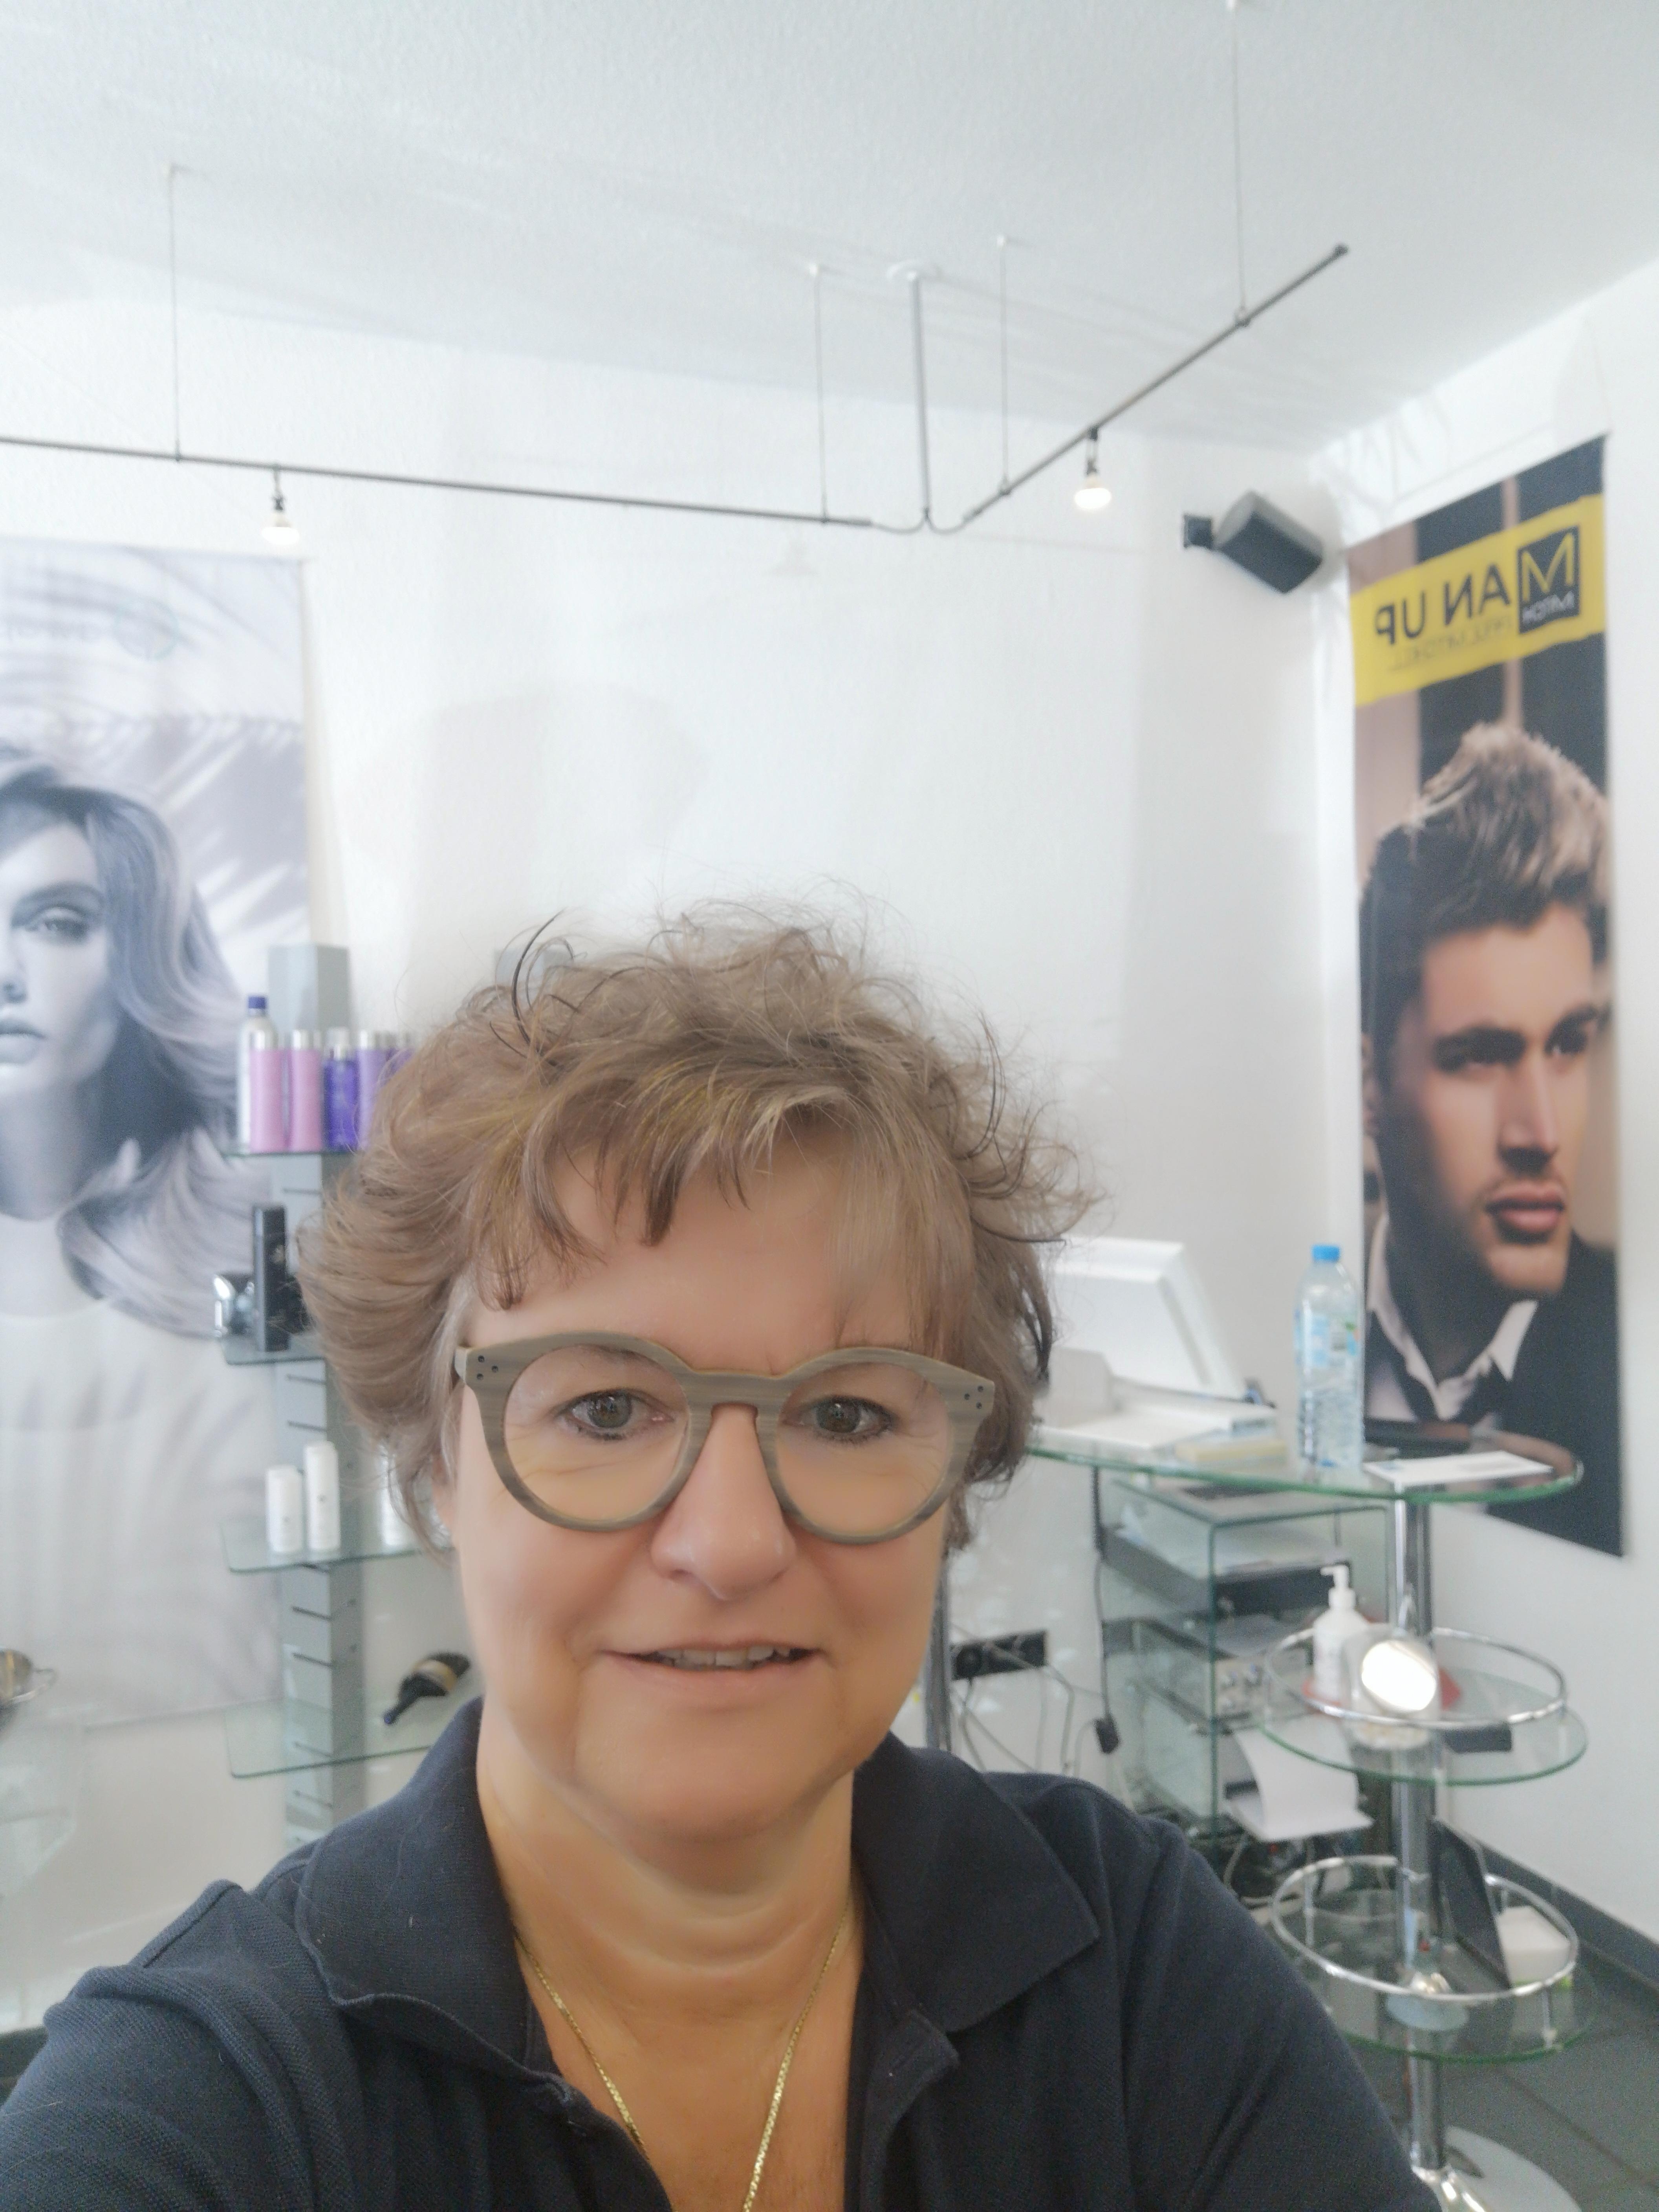 #frisur#fashionbeautychallenge
Neue Frisur und neue Brille😀